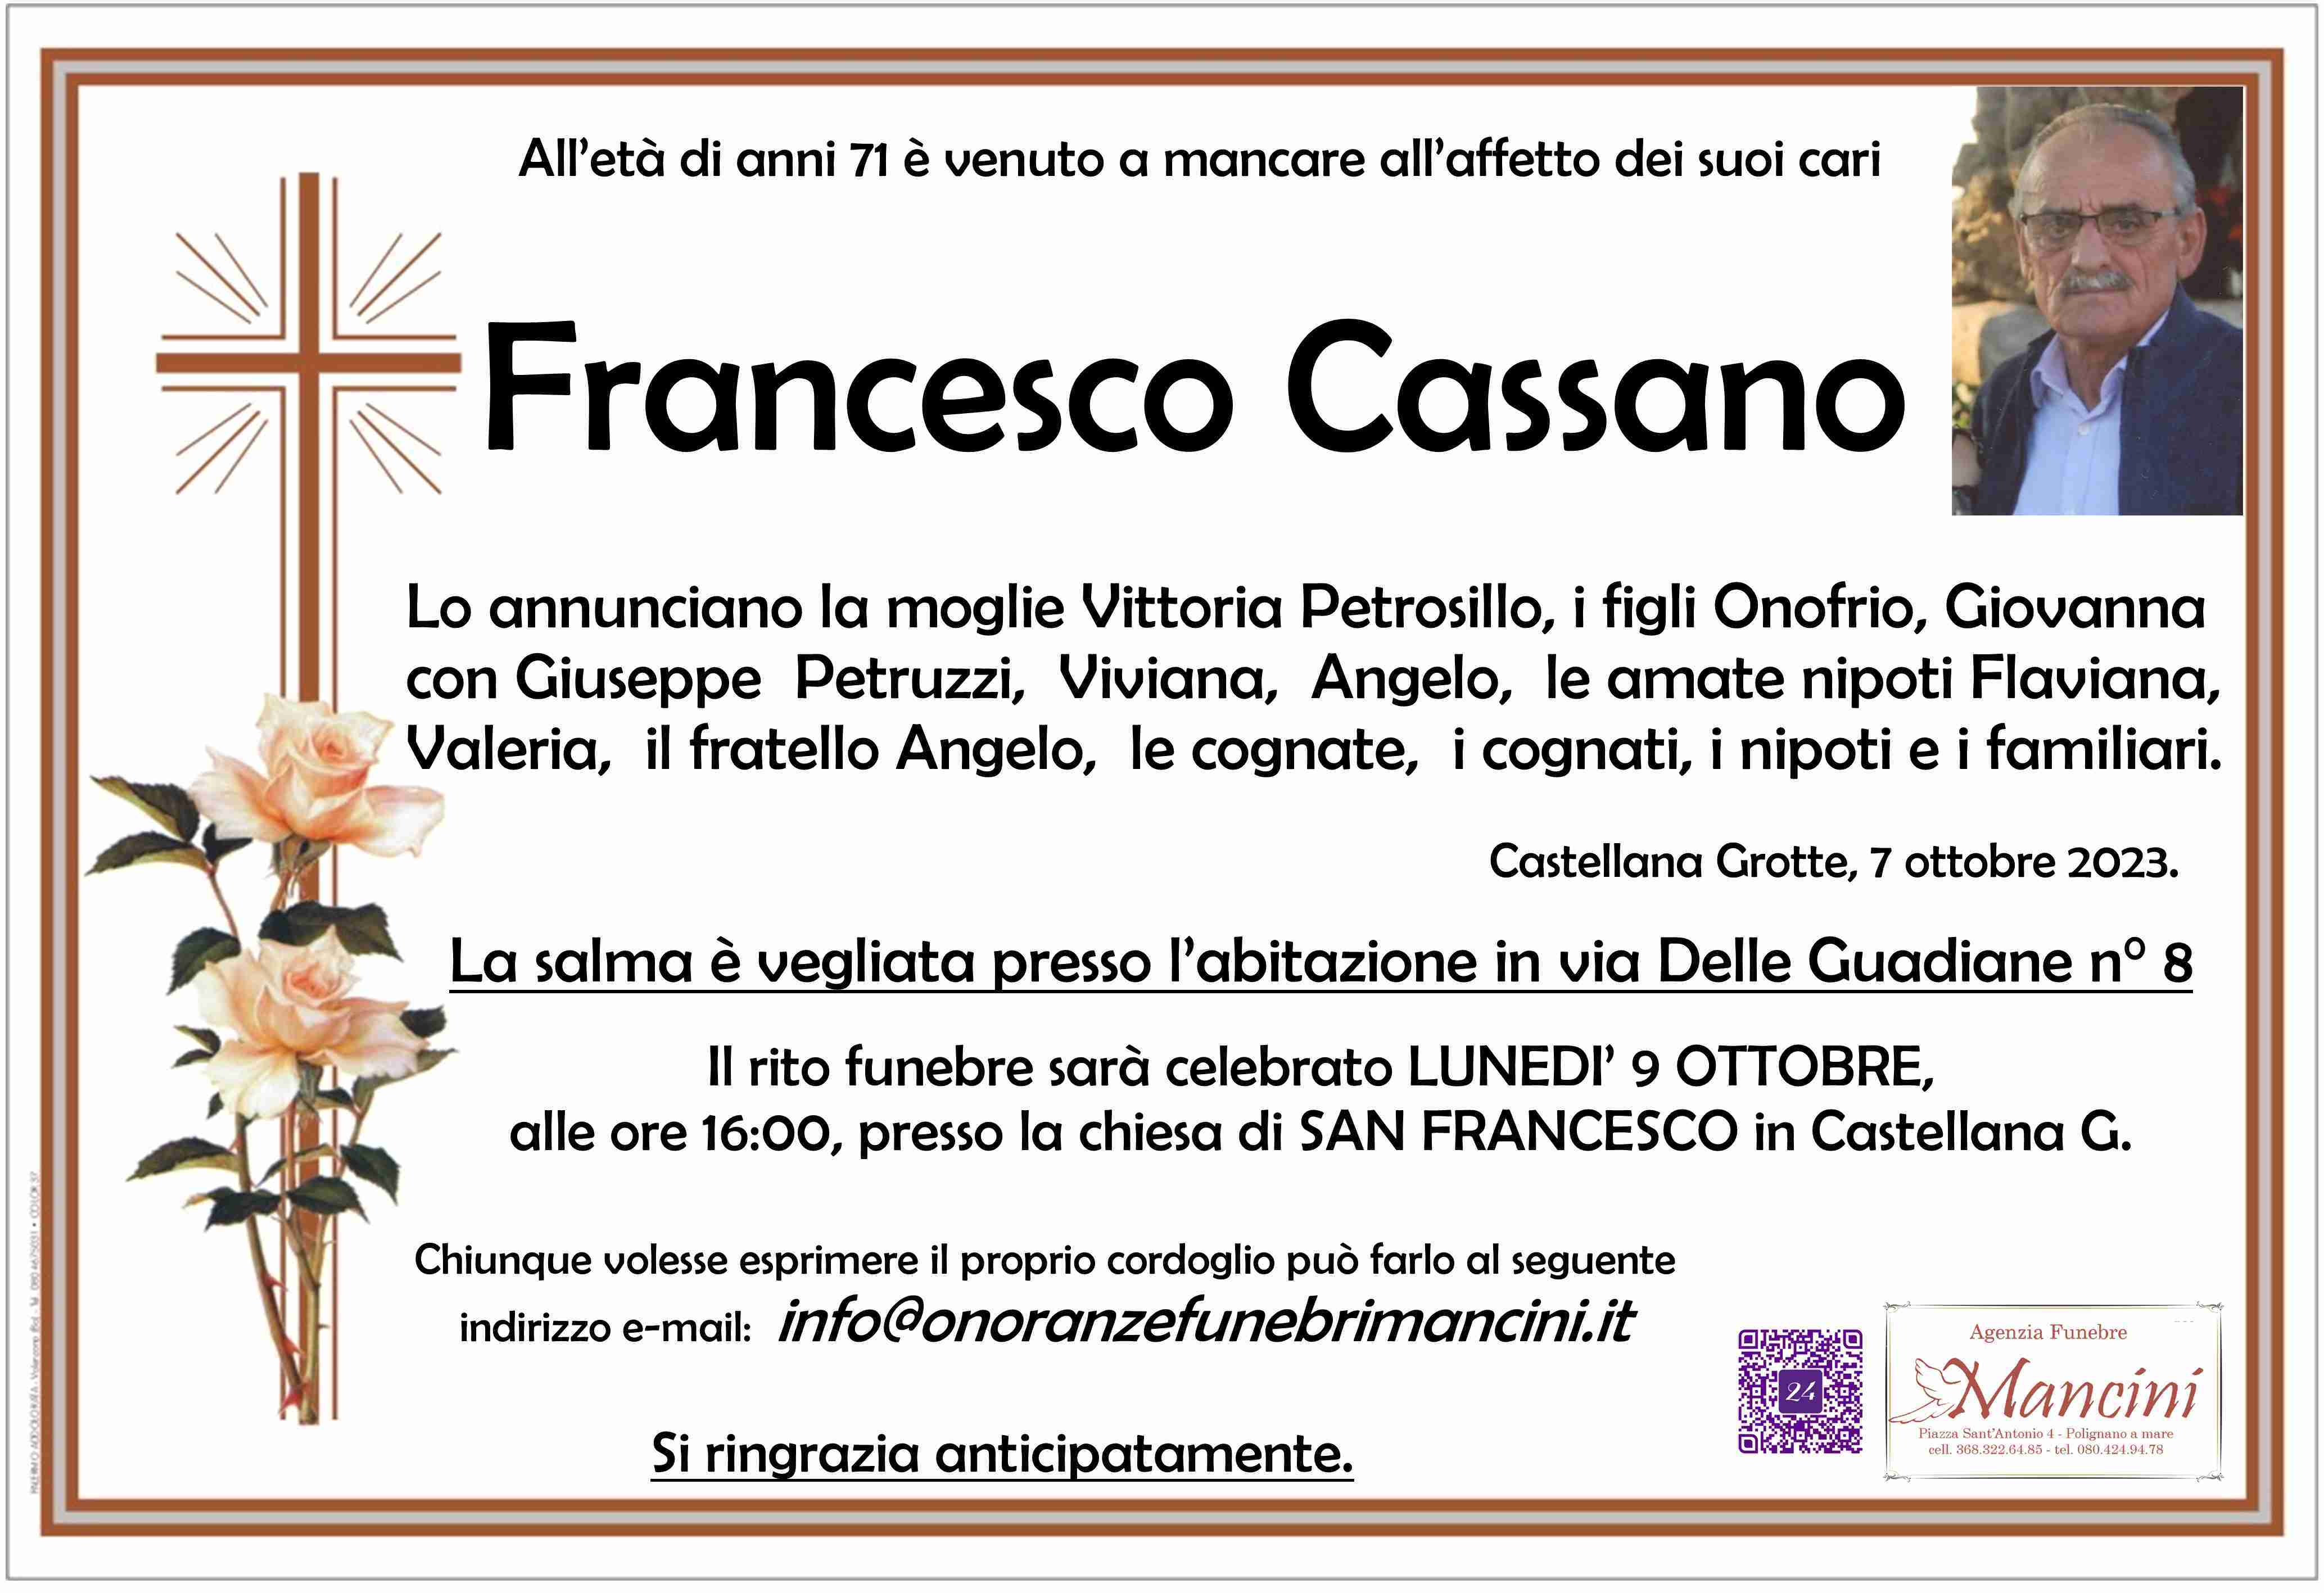 Francesco Cassano